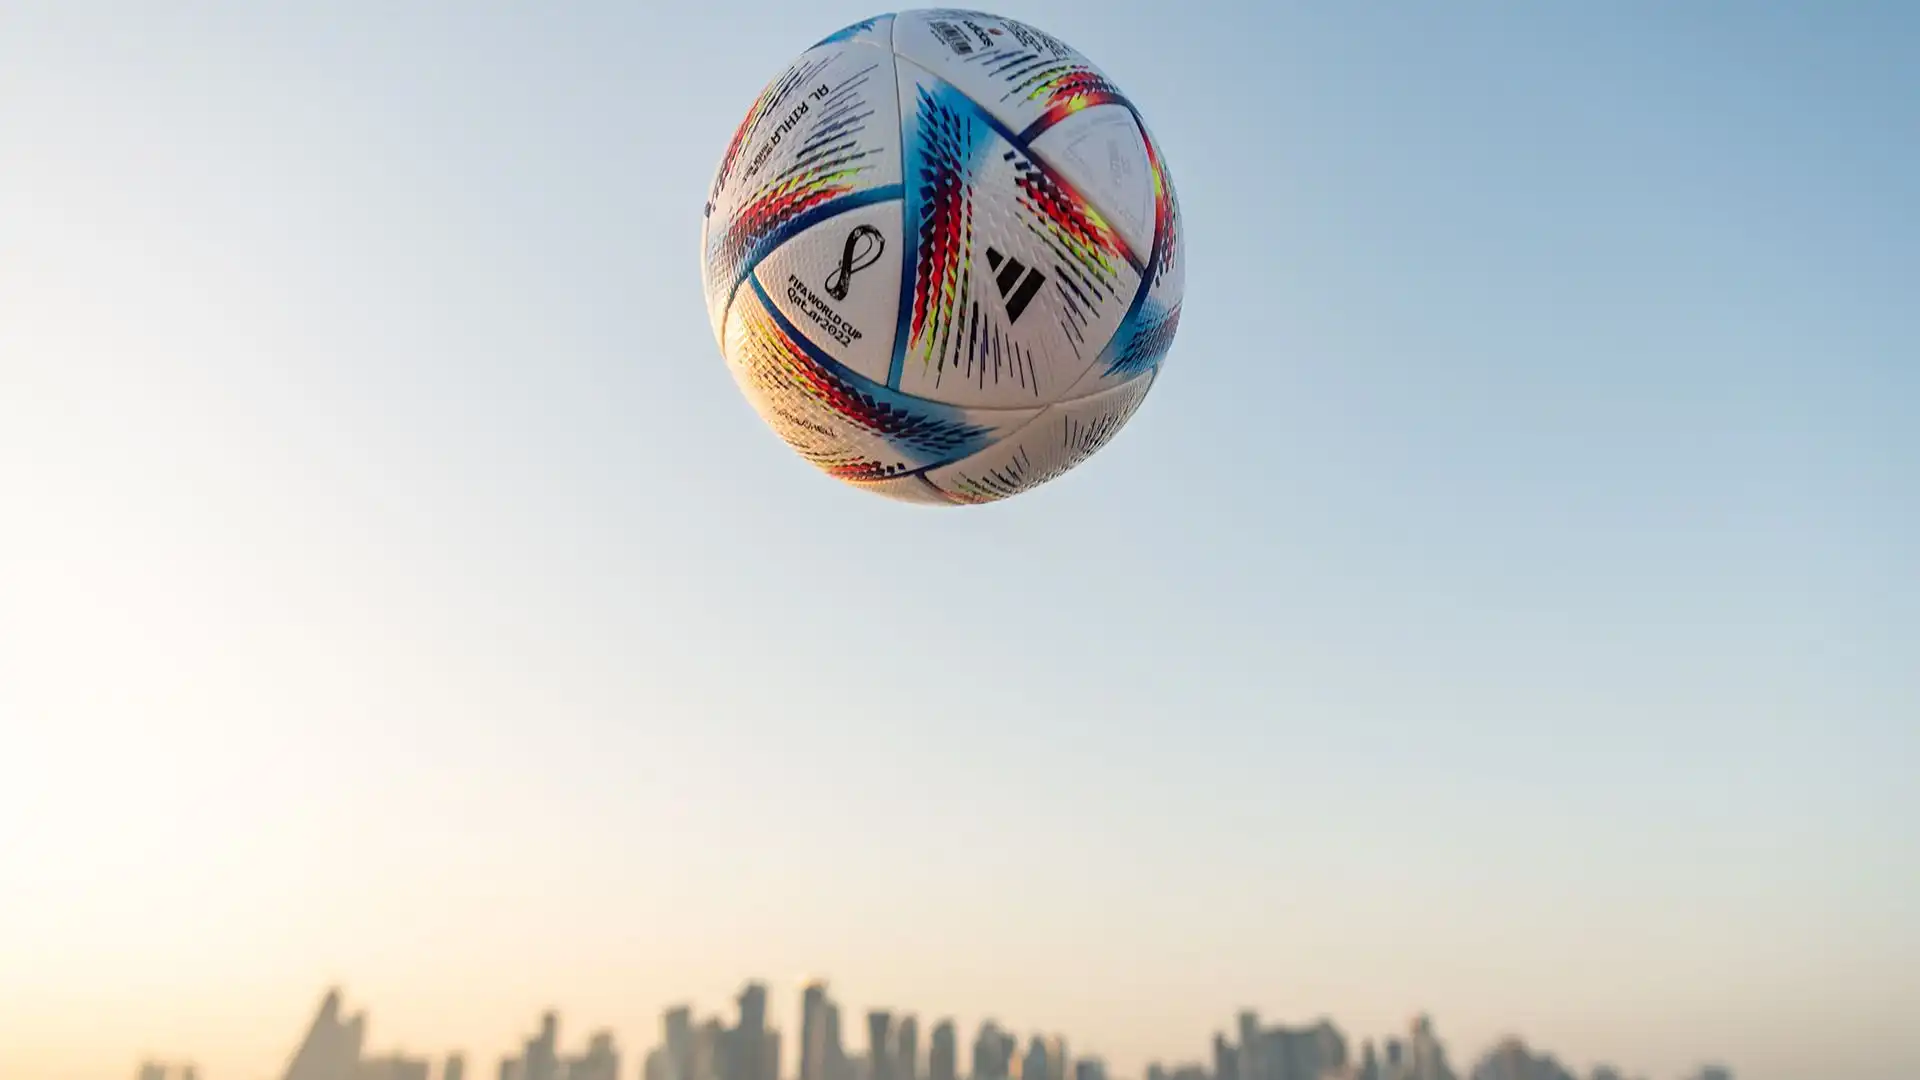 Al Rihla è un pallone altamente tecnologico, progettato per migliorare la rapidità di gioco e la precisione dei tiri.